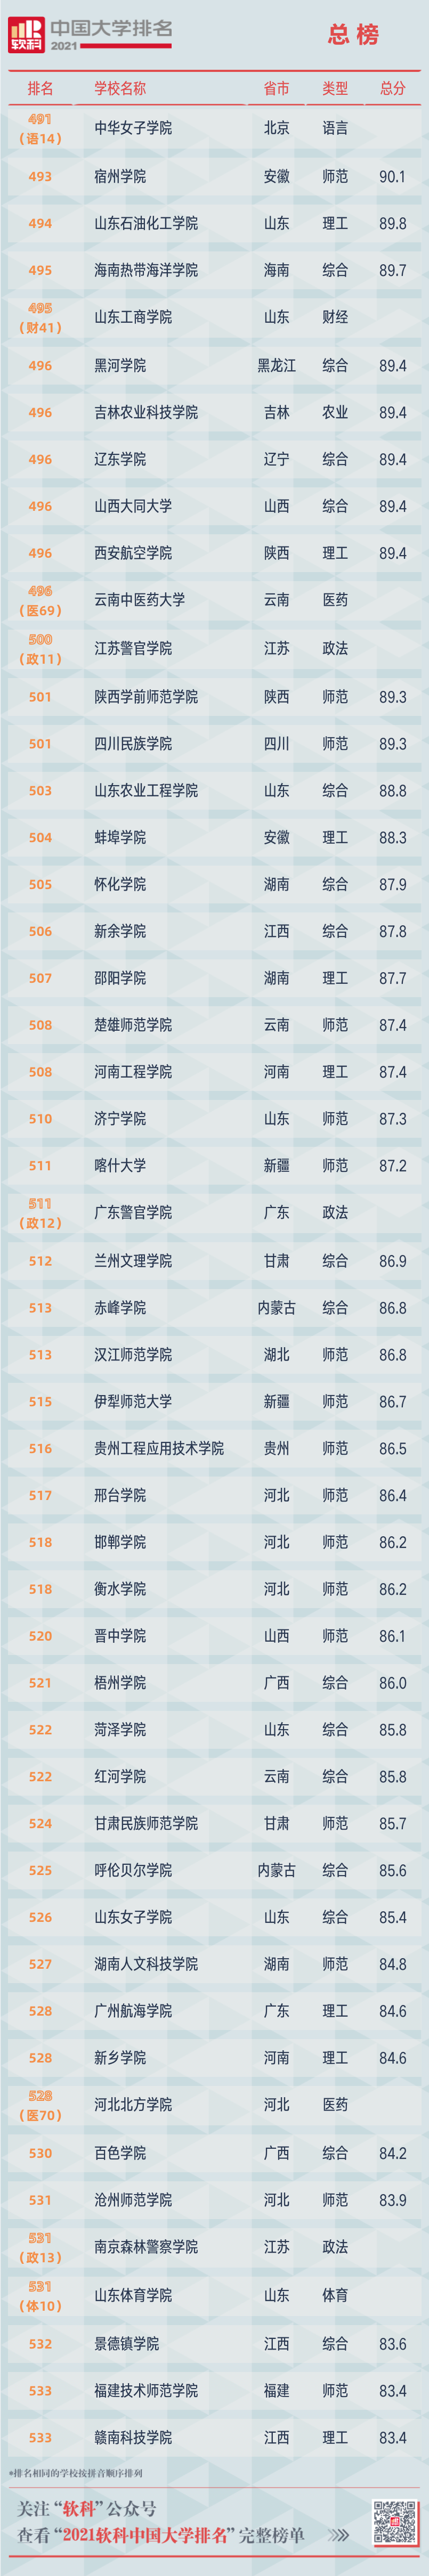 2021软科中国大学排名重磅发布 广东中山大学位列第12位  排名 CWUR排名 第36张